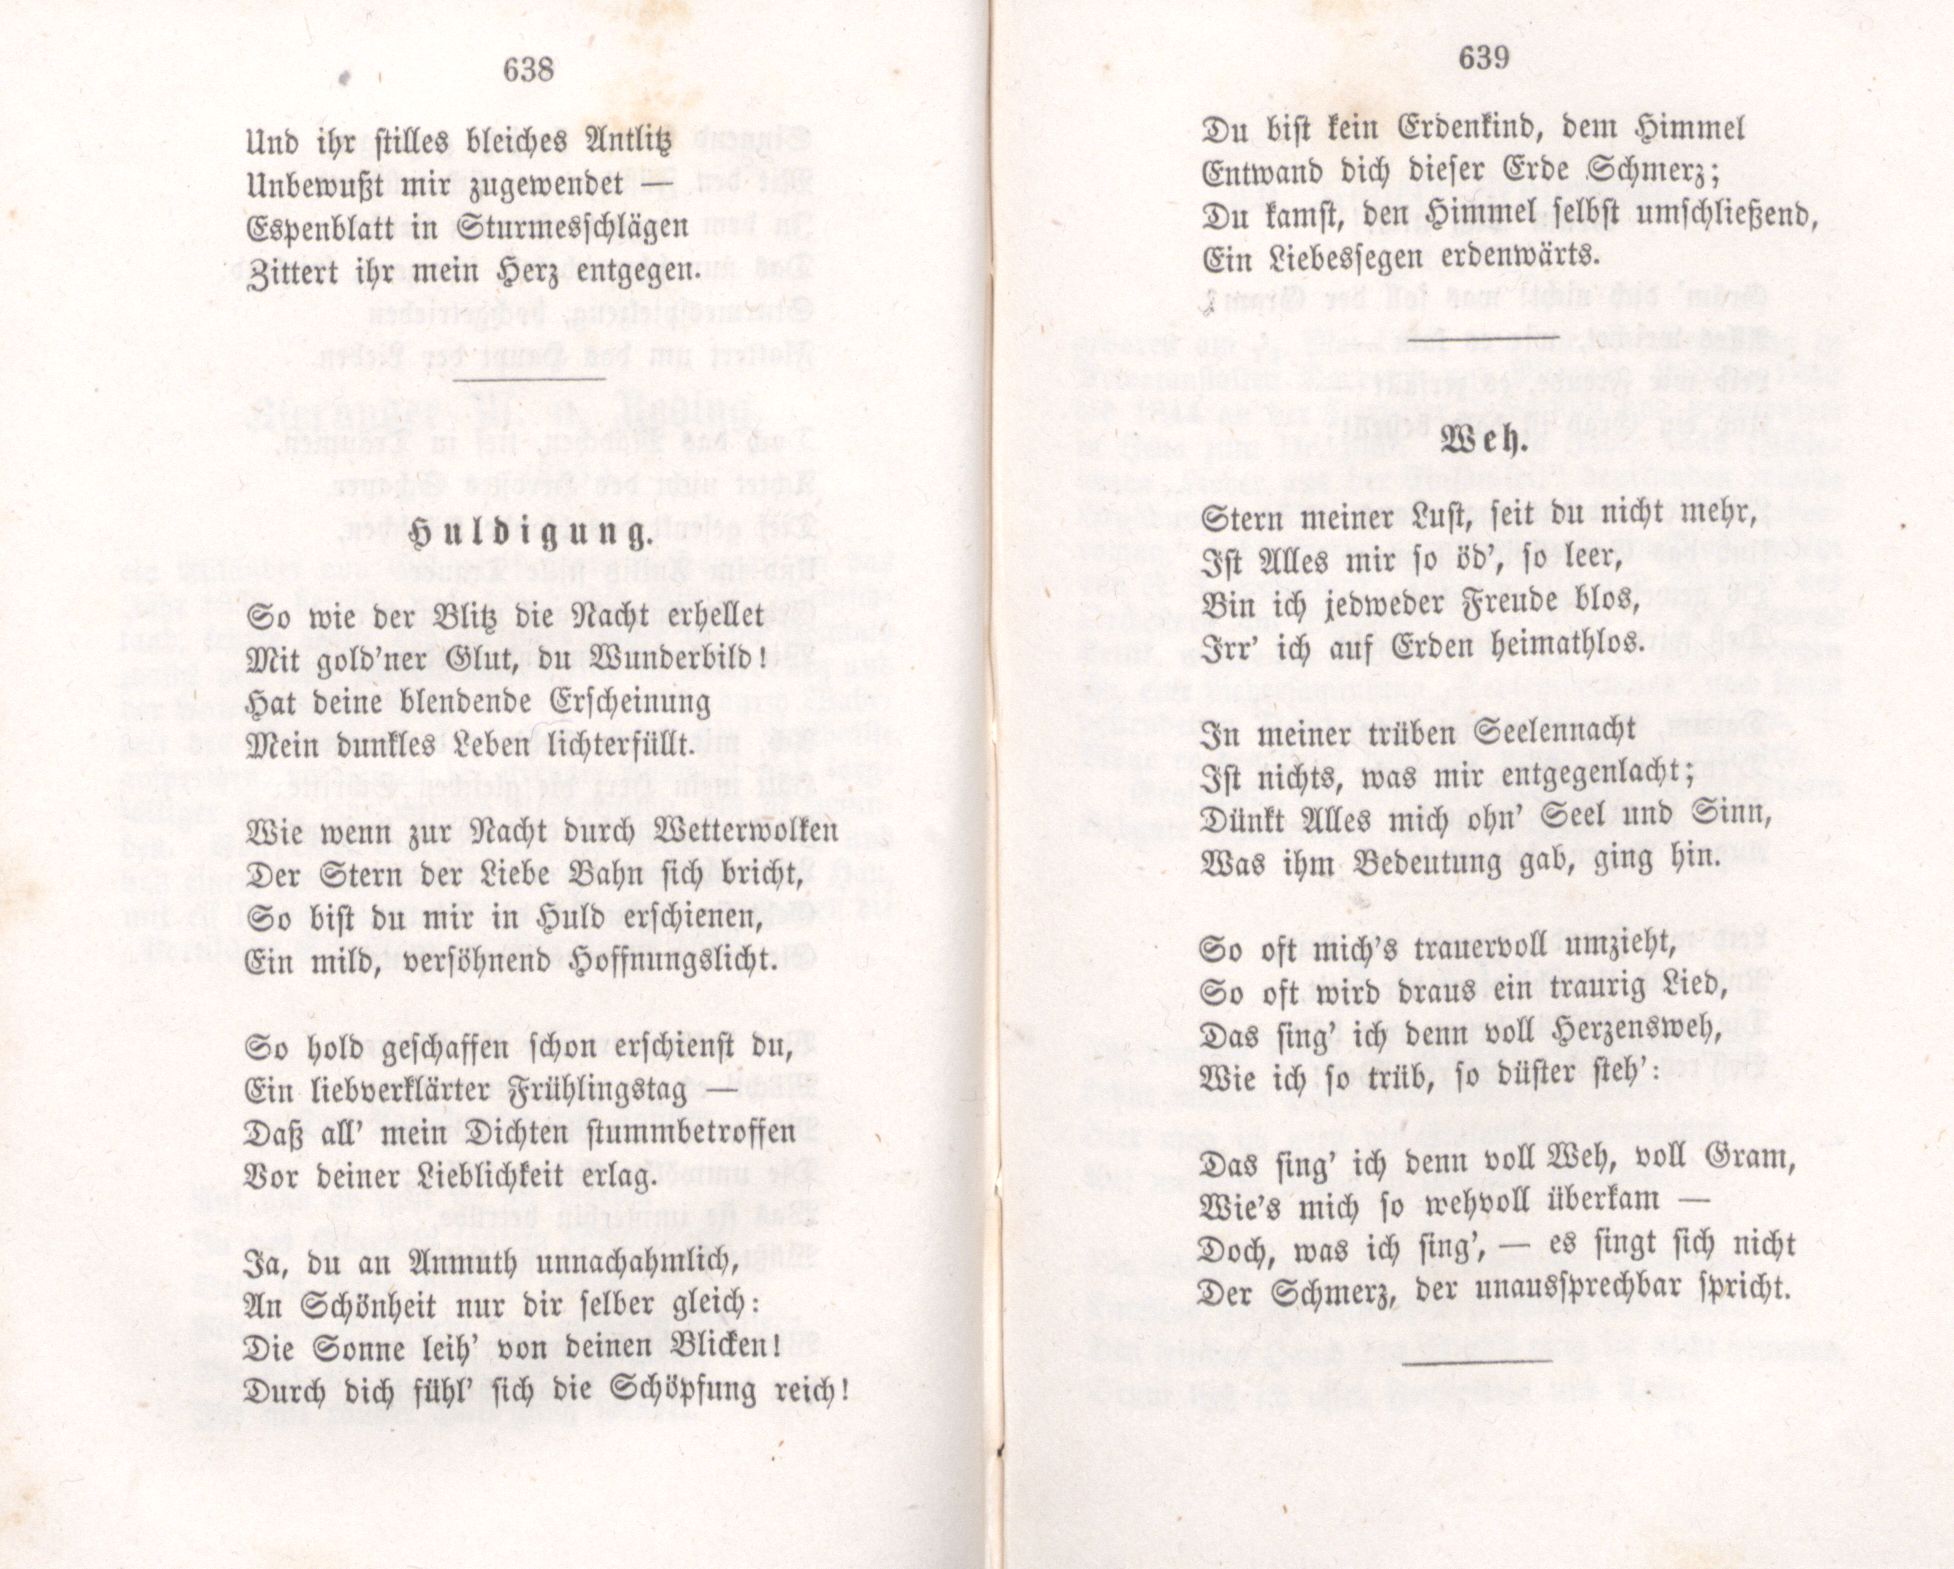 Huldigung (1855) | 1. (638-639) Основной текст